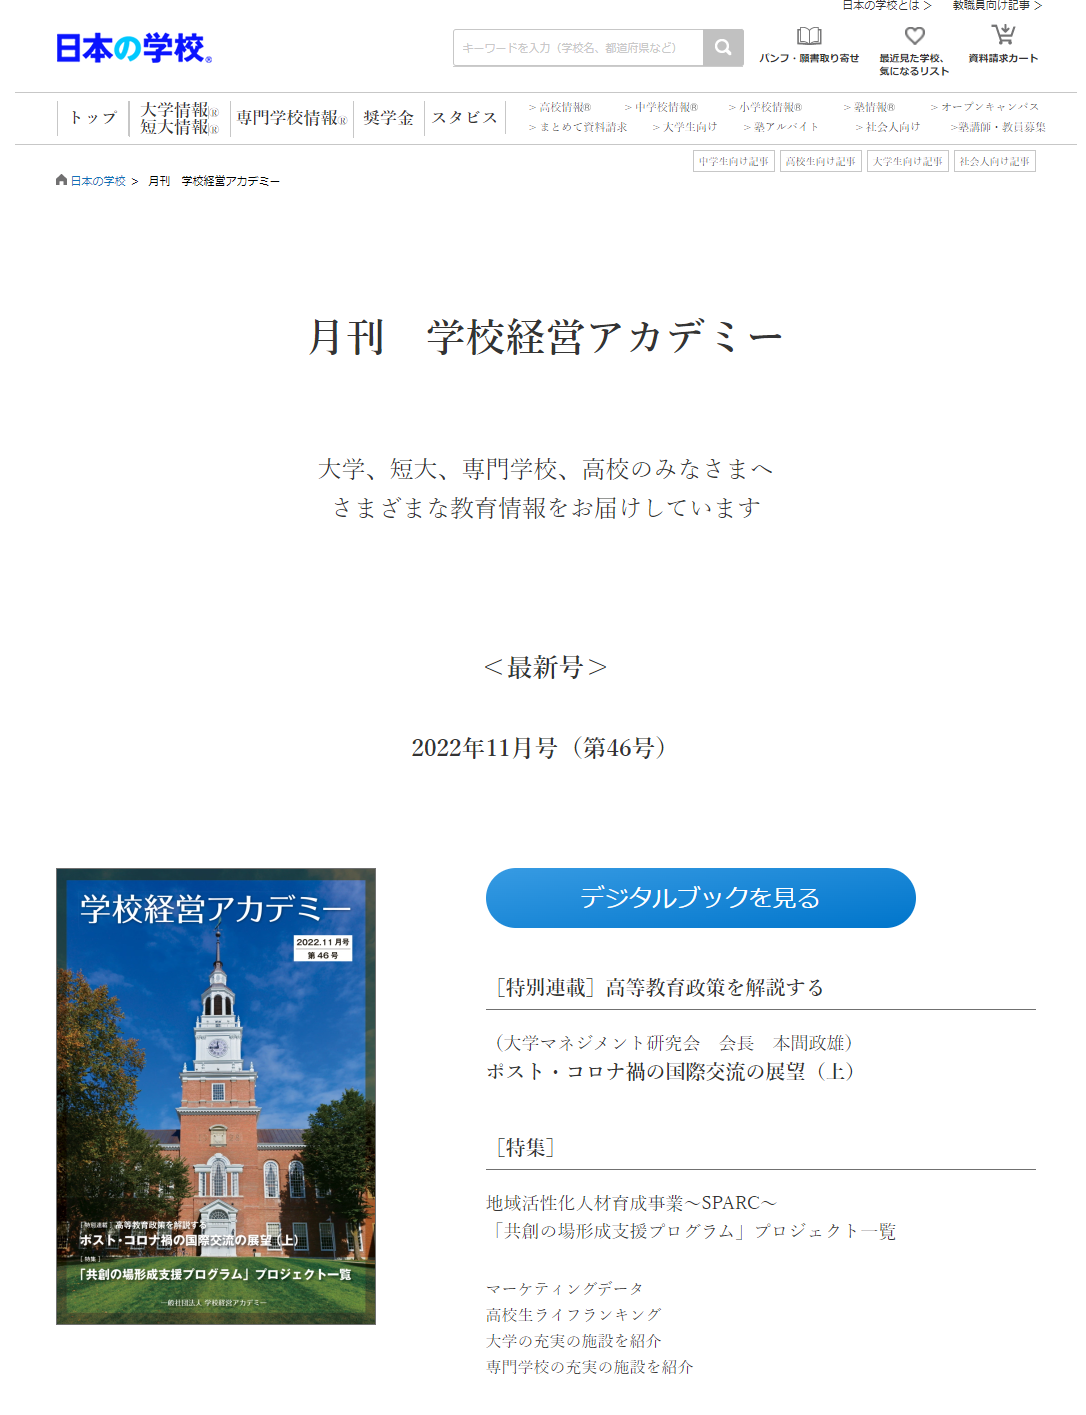 月刊学校経営アカデミーのデジタルブック